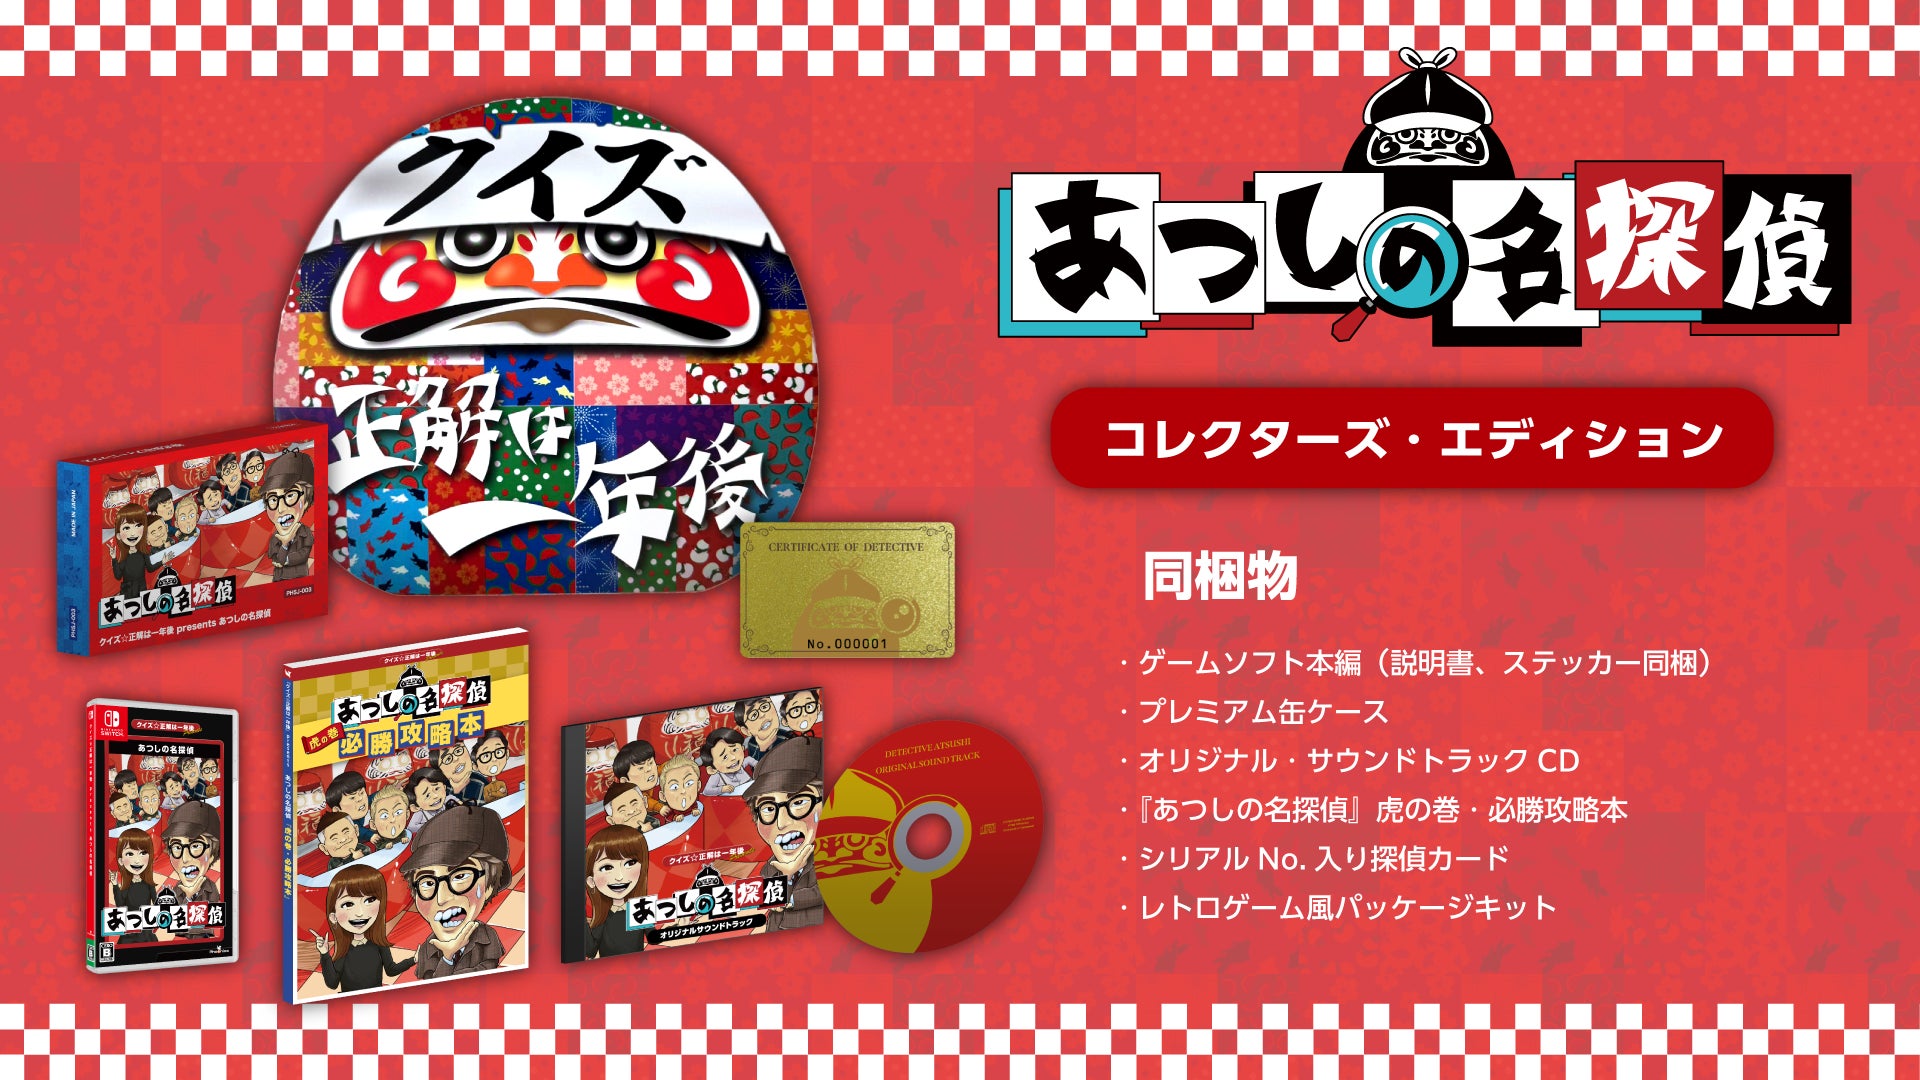 『クイズ☆正解は一年後 presents あつしの名探偵』Nintendo Switch™にて本日より配信開始！